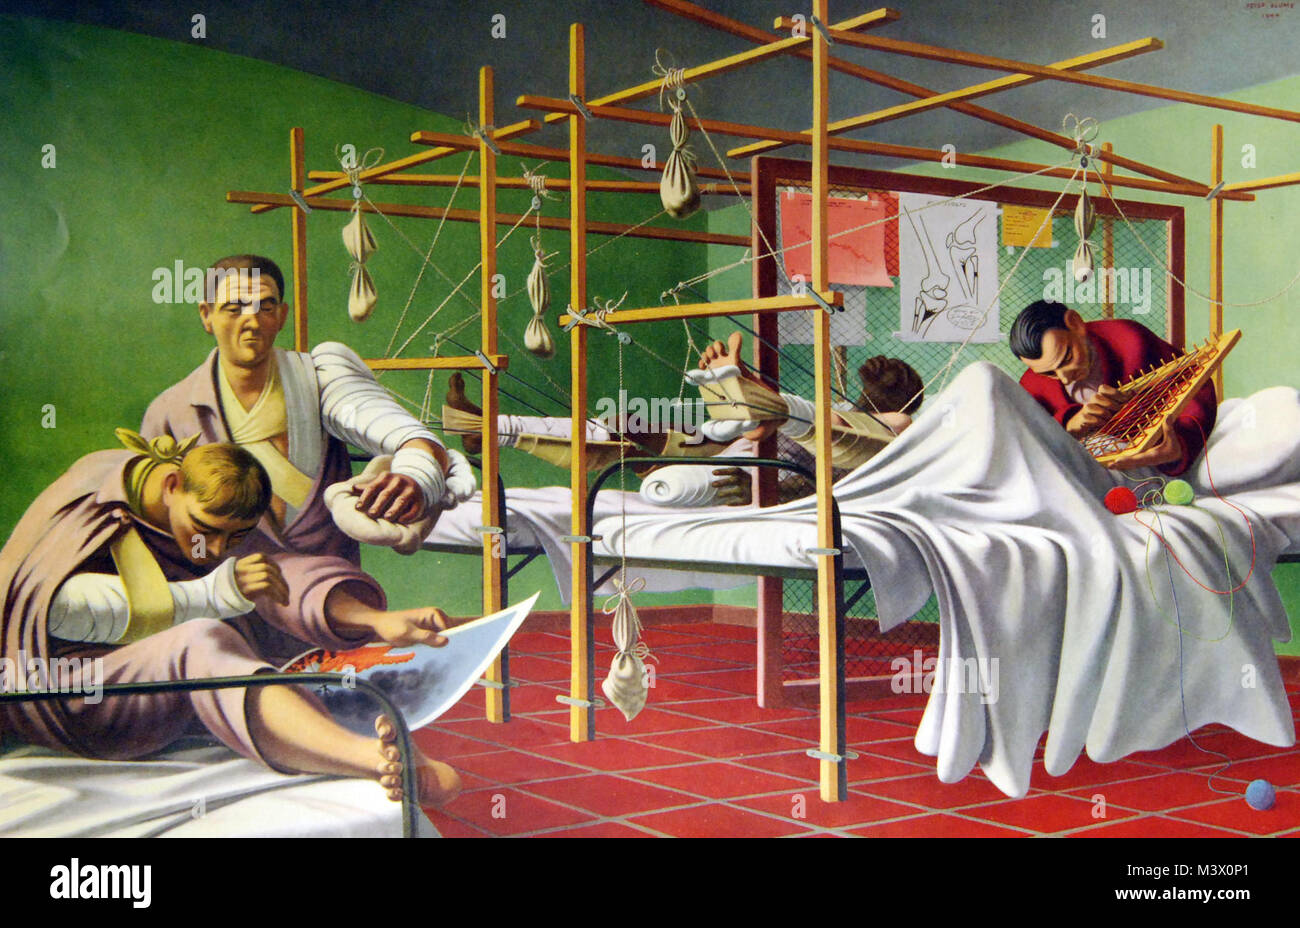 Viele -7409-14: WWII: Gemälde der Armee Medizin. "Fraktur Ward". Kunstwerke von Peter Blume. Abbott Laboratories. Mit freundlicher Genehmigung der Bibliothek des Kongresses. (2018/02/02). Viele -7409-14 26171899808 o Stockfoto